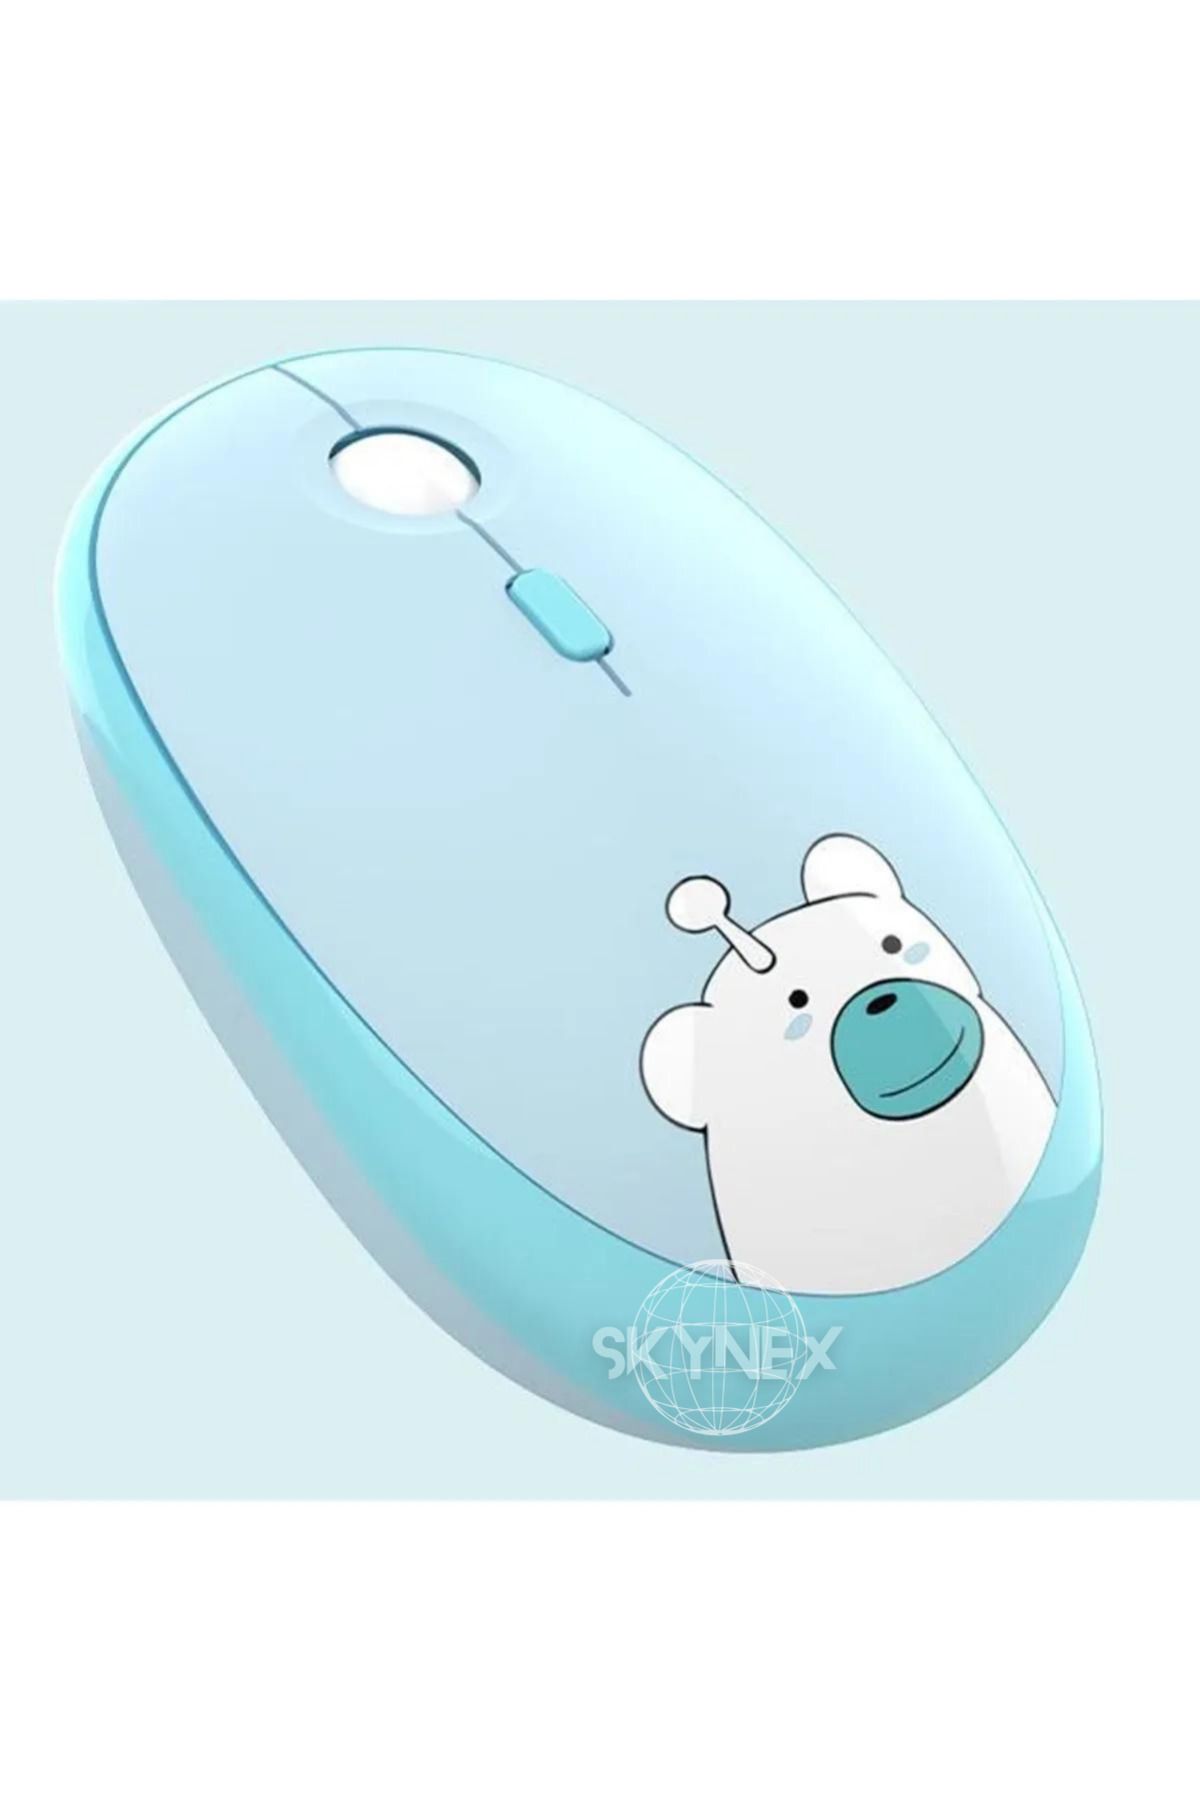 SKYNEX Kablosuz Wireless Mouse Renkli Ayıcık Tasarım Kablosuz Sessiz Bilgisayar Laptop için Pilli Fare M2